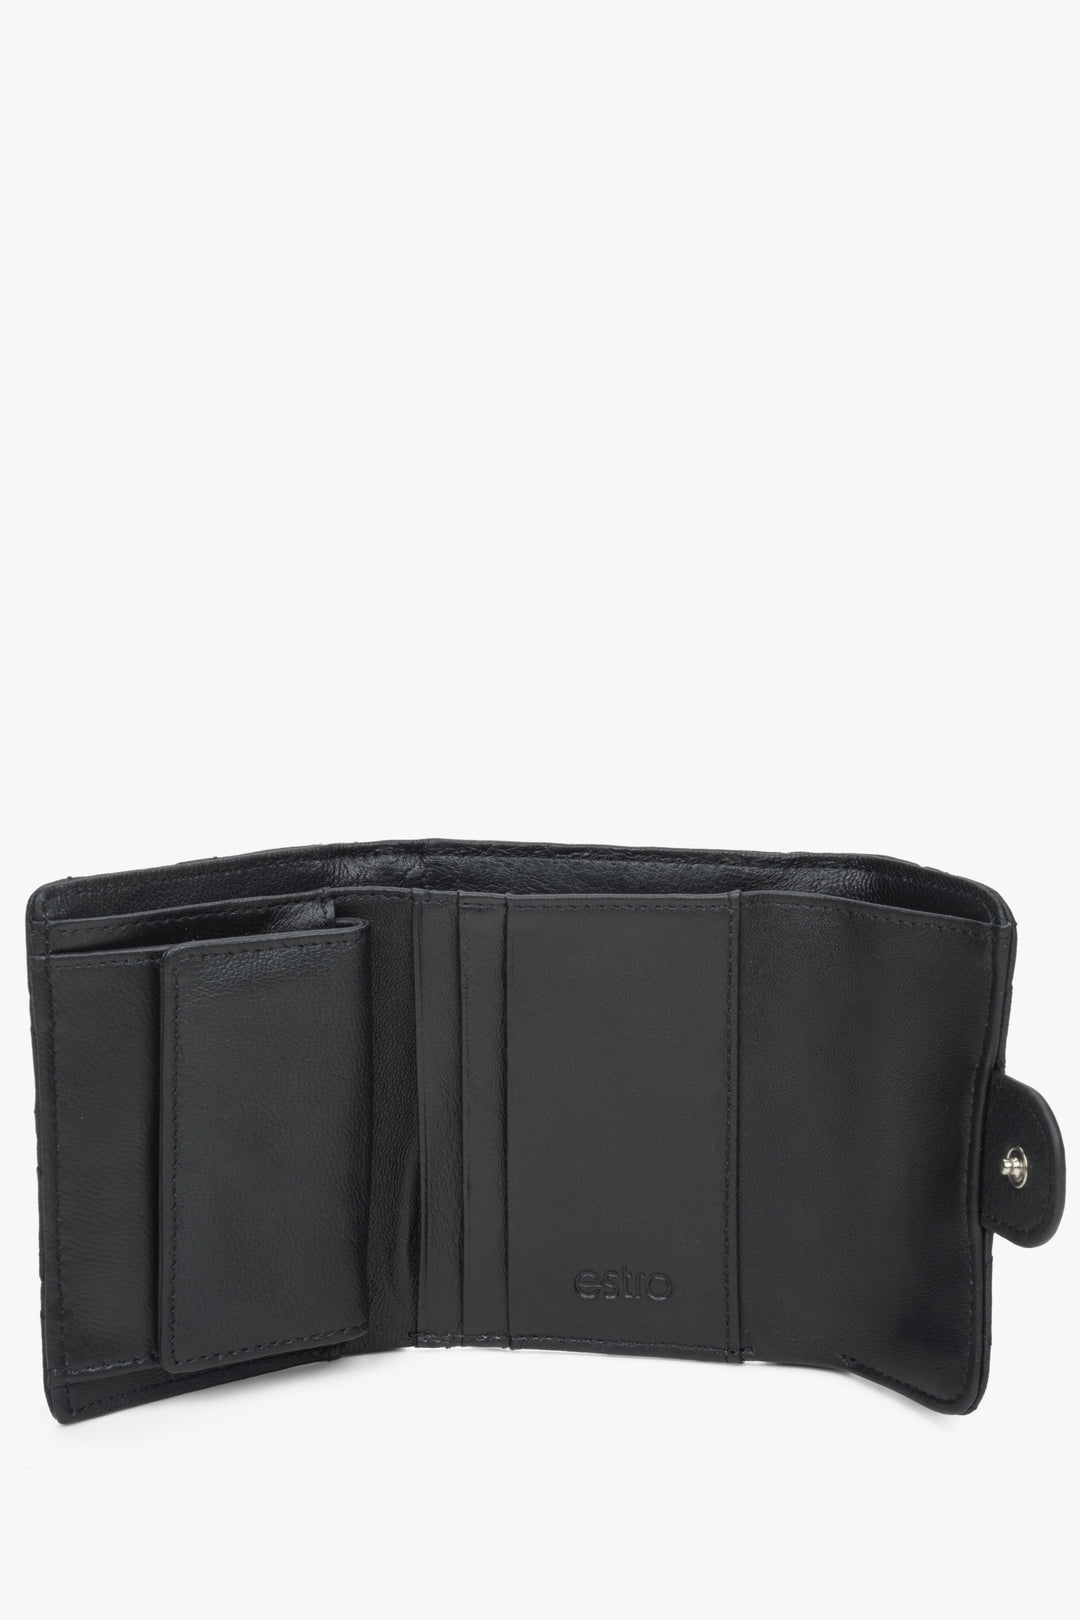 A black handy women's wallet with Estro embossing - interior.